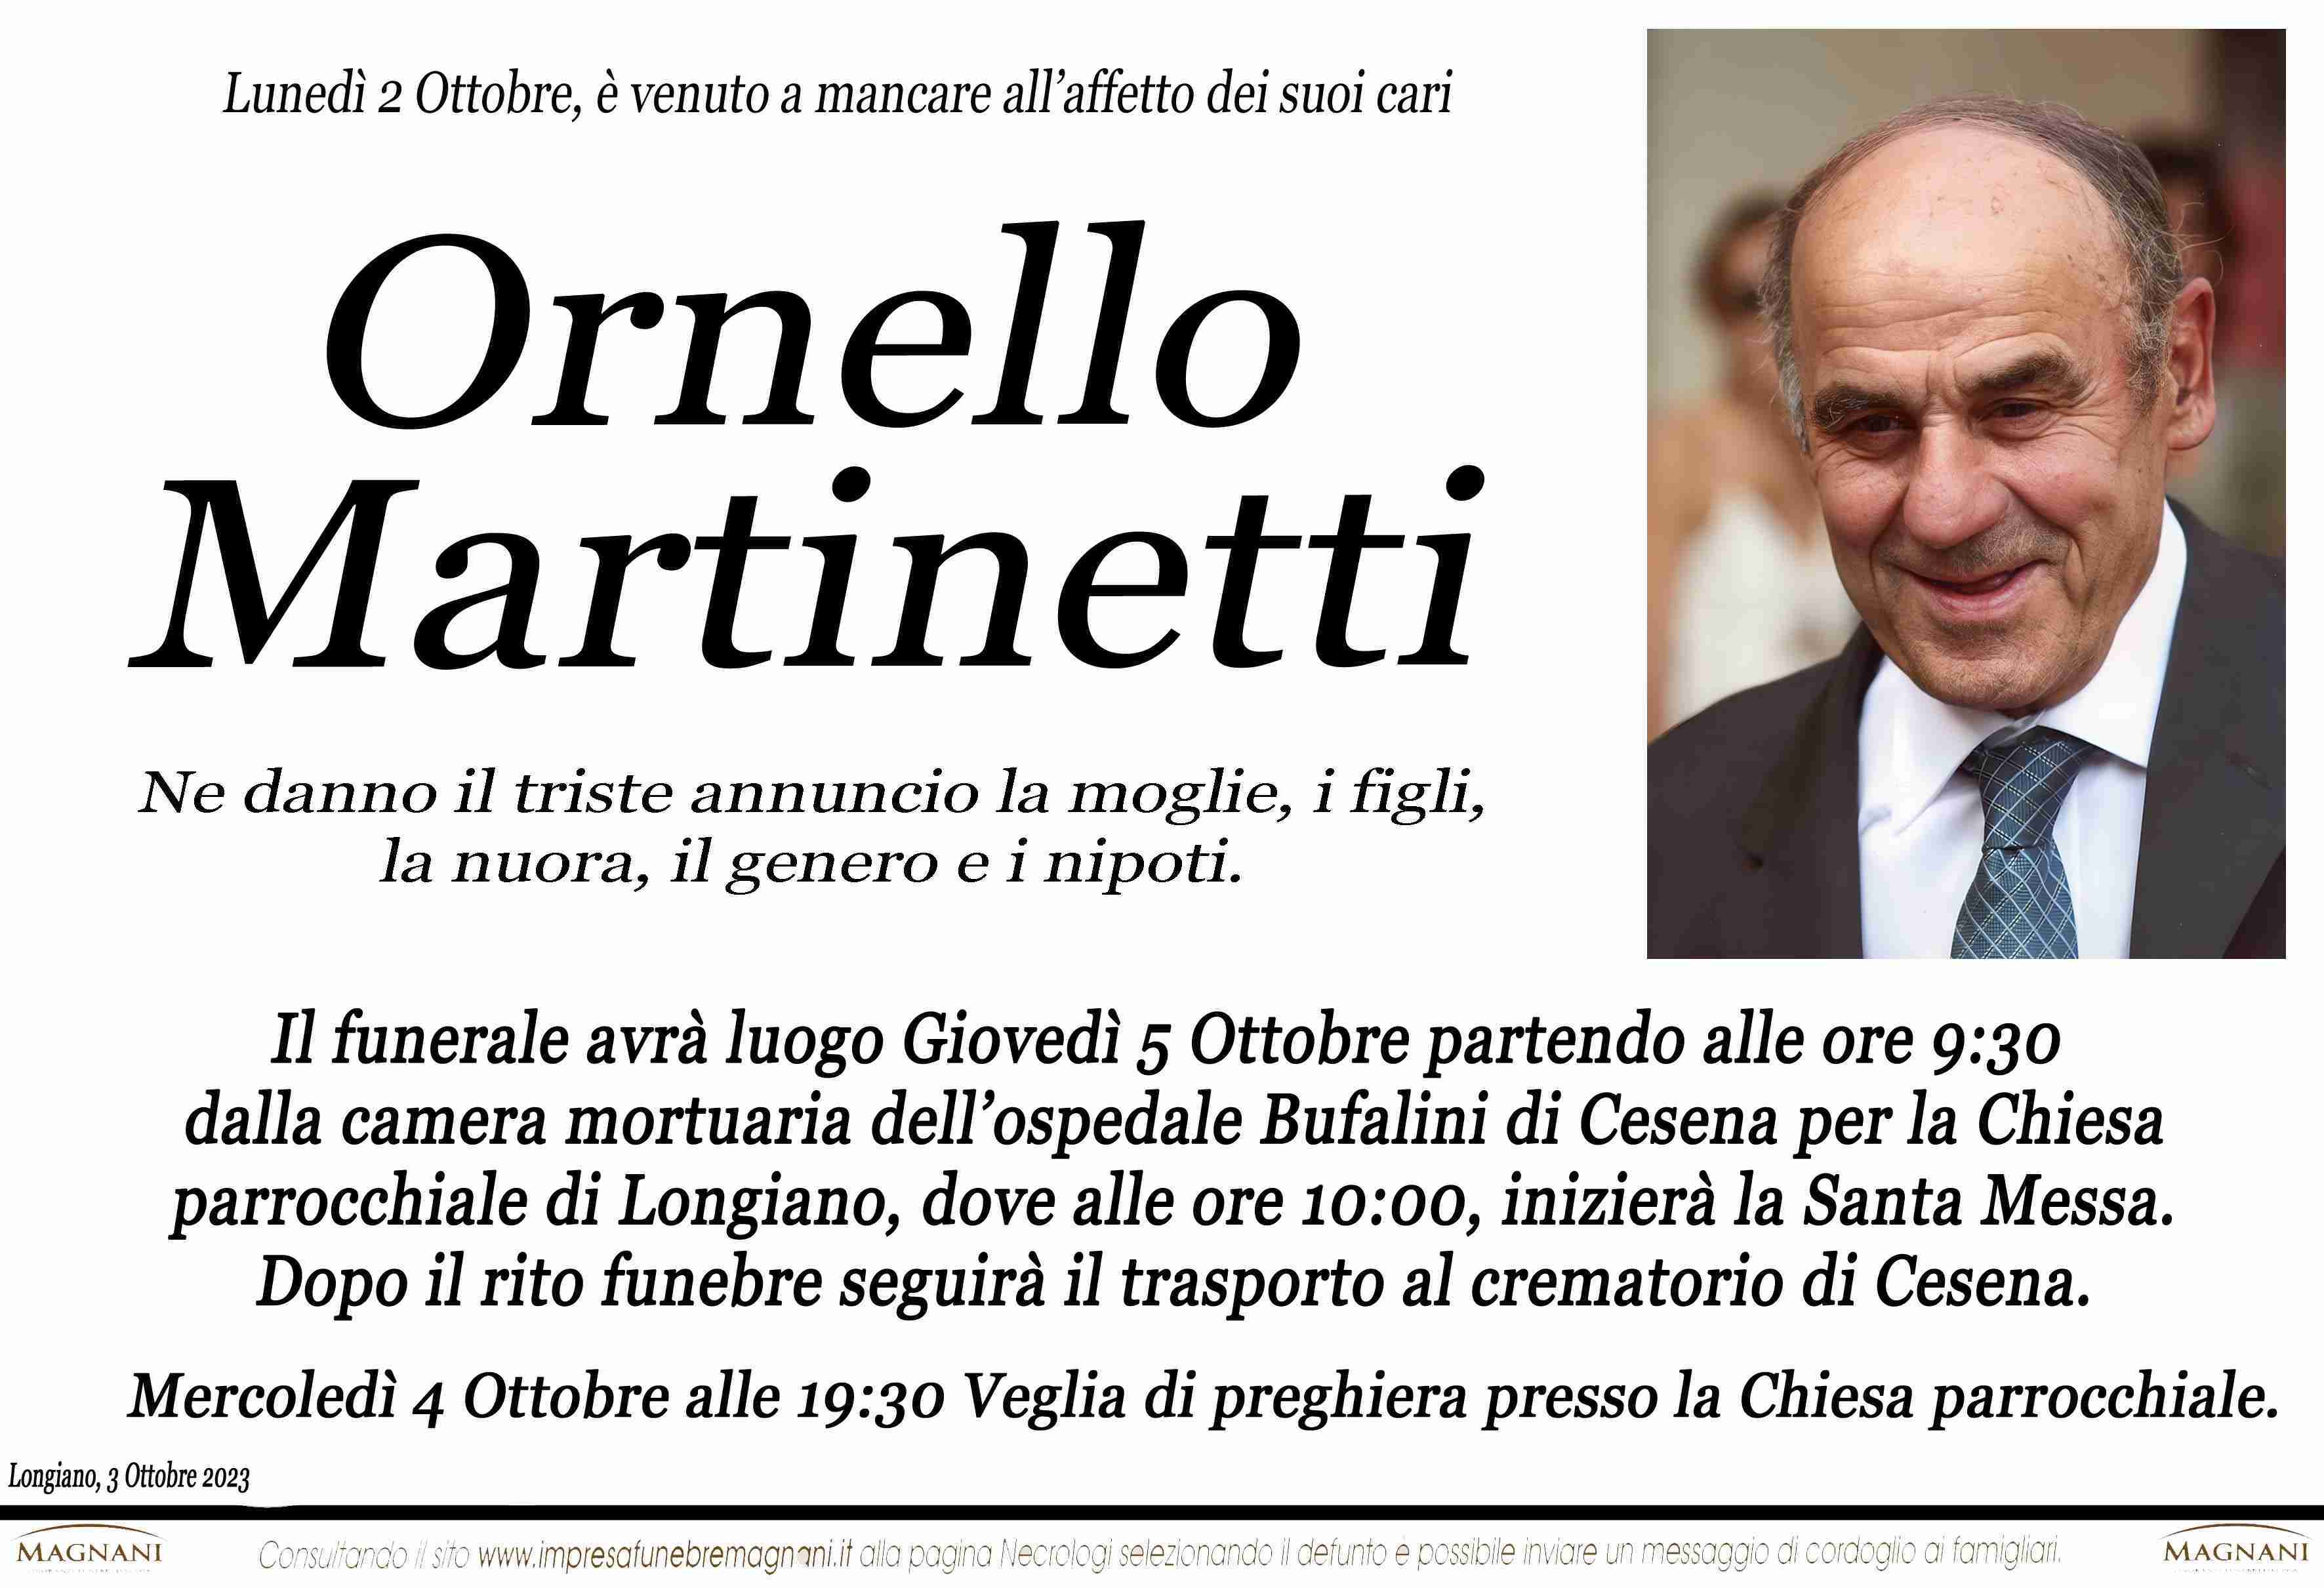 Ornello Martinetti